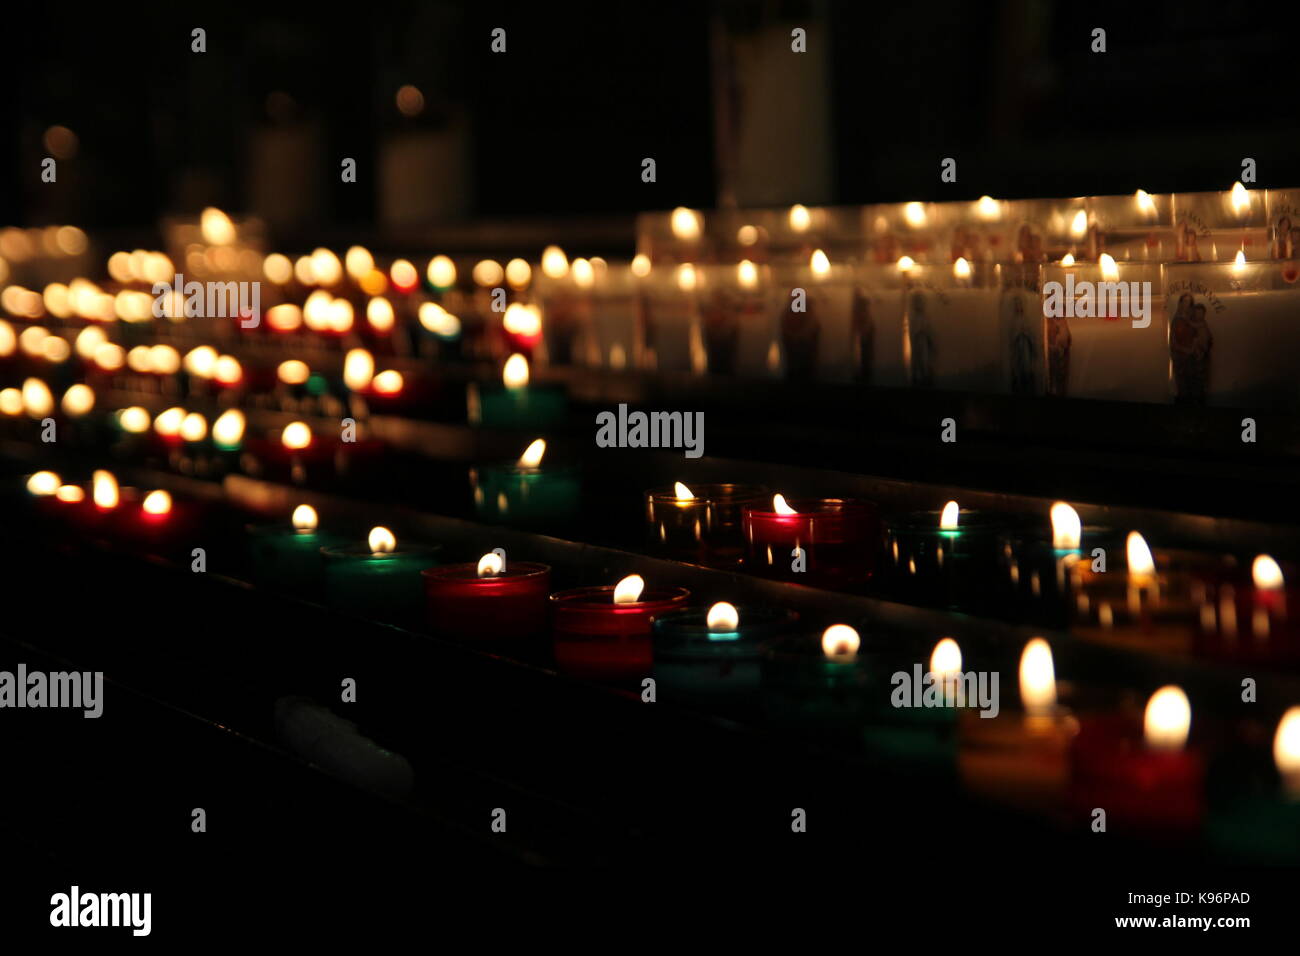 Messa a fuoco poco profonda shot di righe di candele votive in una chiesa cattolica Foto Stock